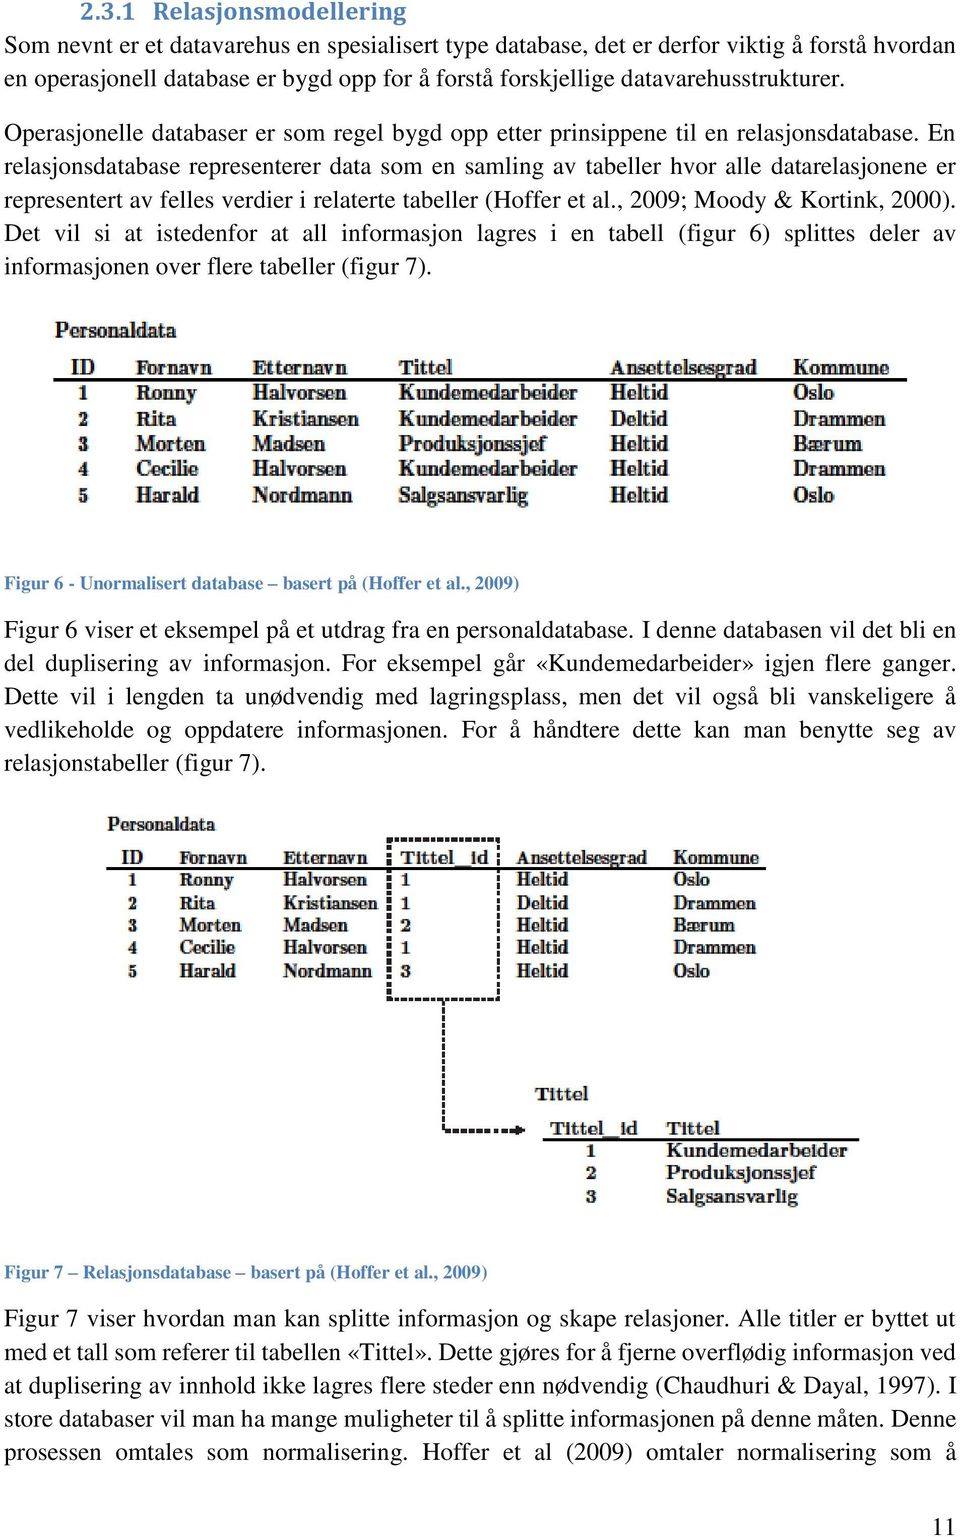 En relasjonsdatabase representerer data som en samling av tabeller hvor alle datarelasjonene er representert av felles verdier i relaterte tabeller (Hoffer et al., 2009; Moody & Kortink, 2000).